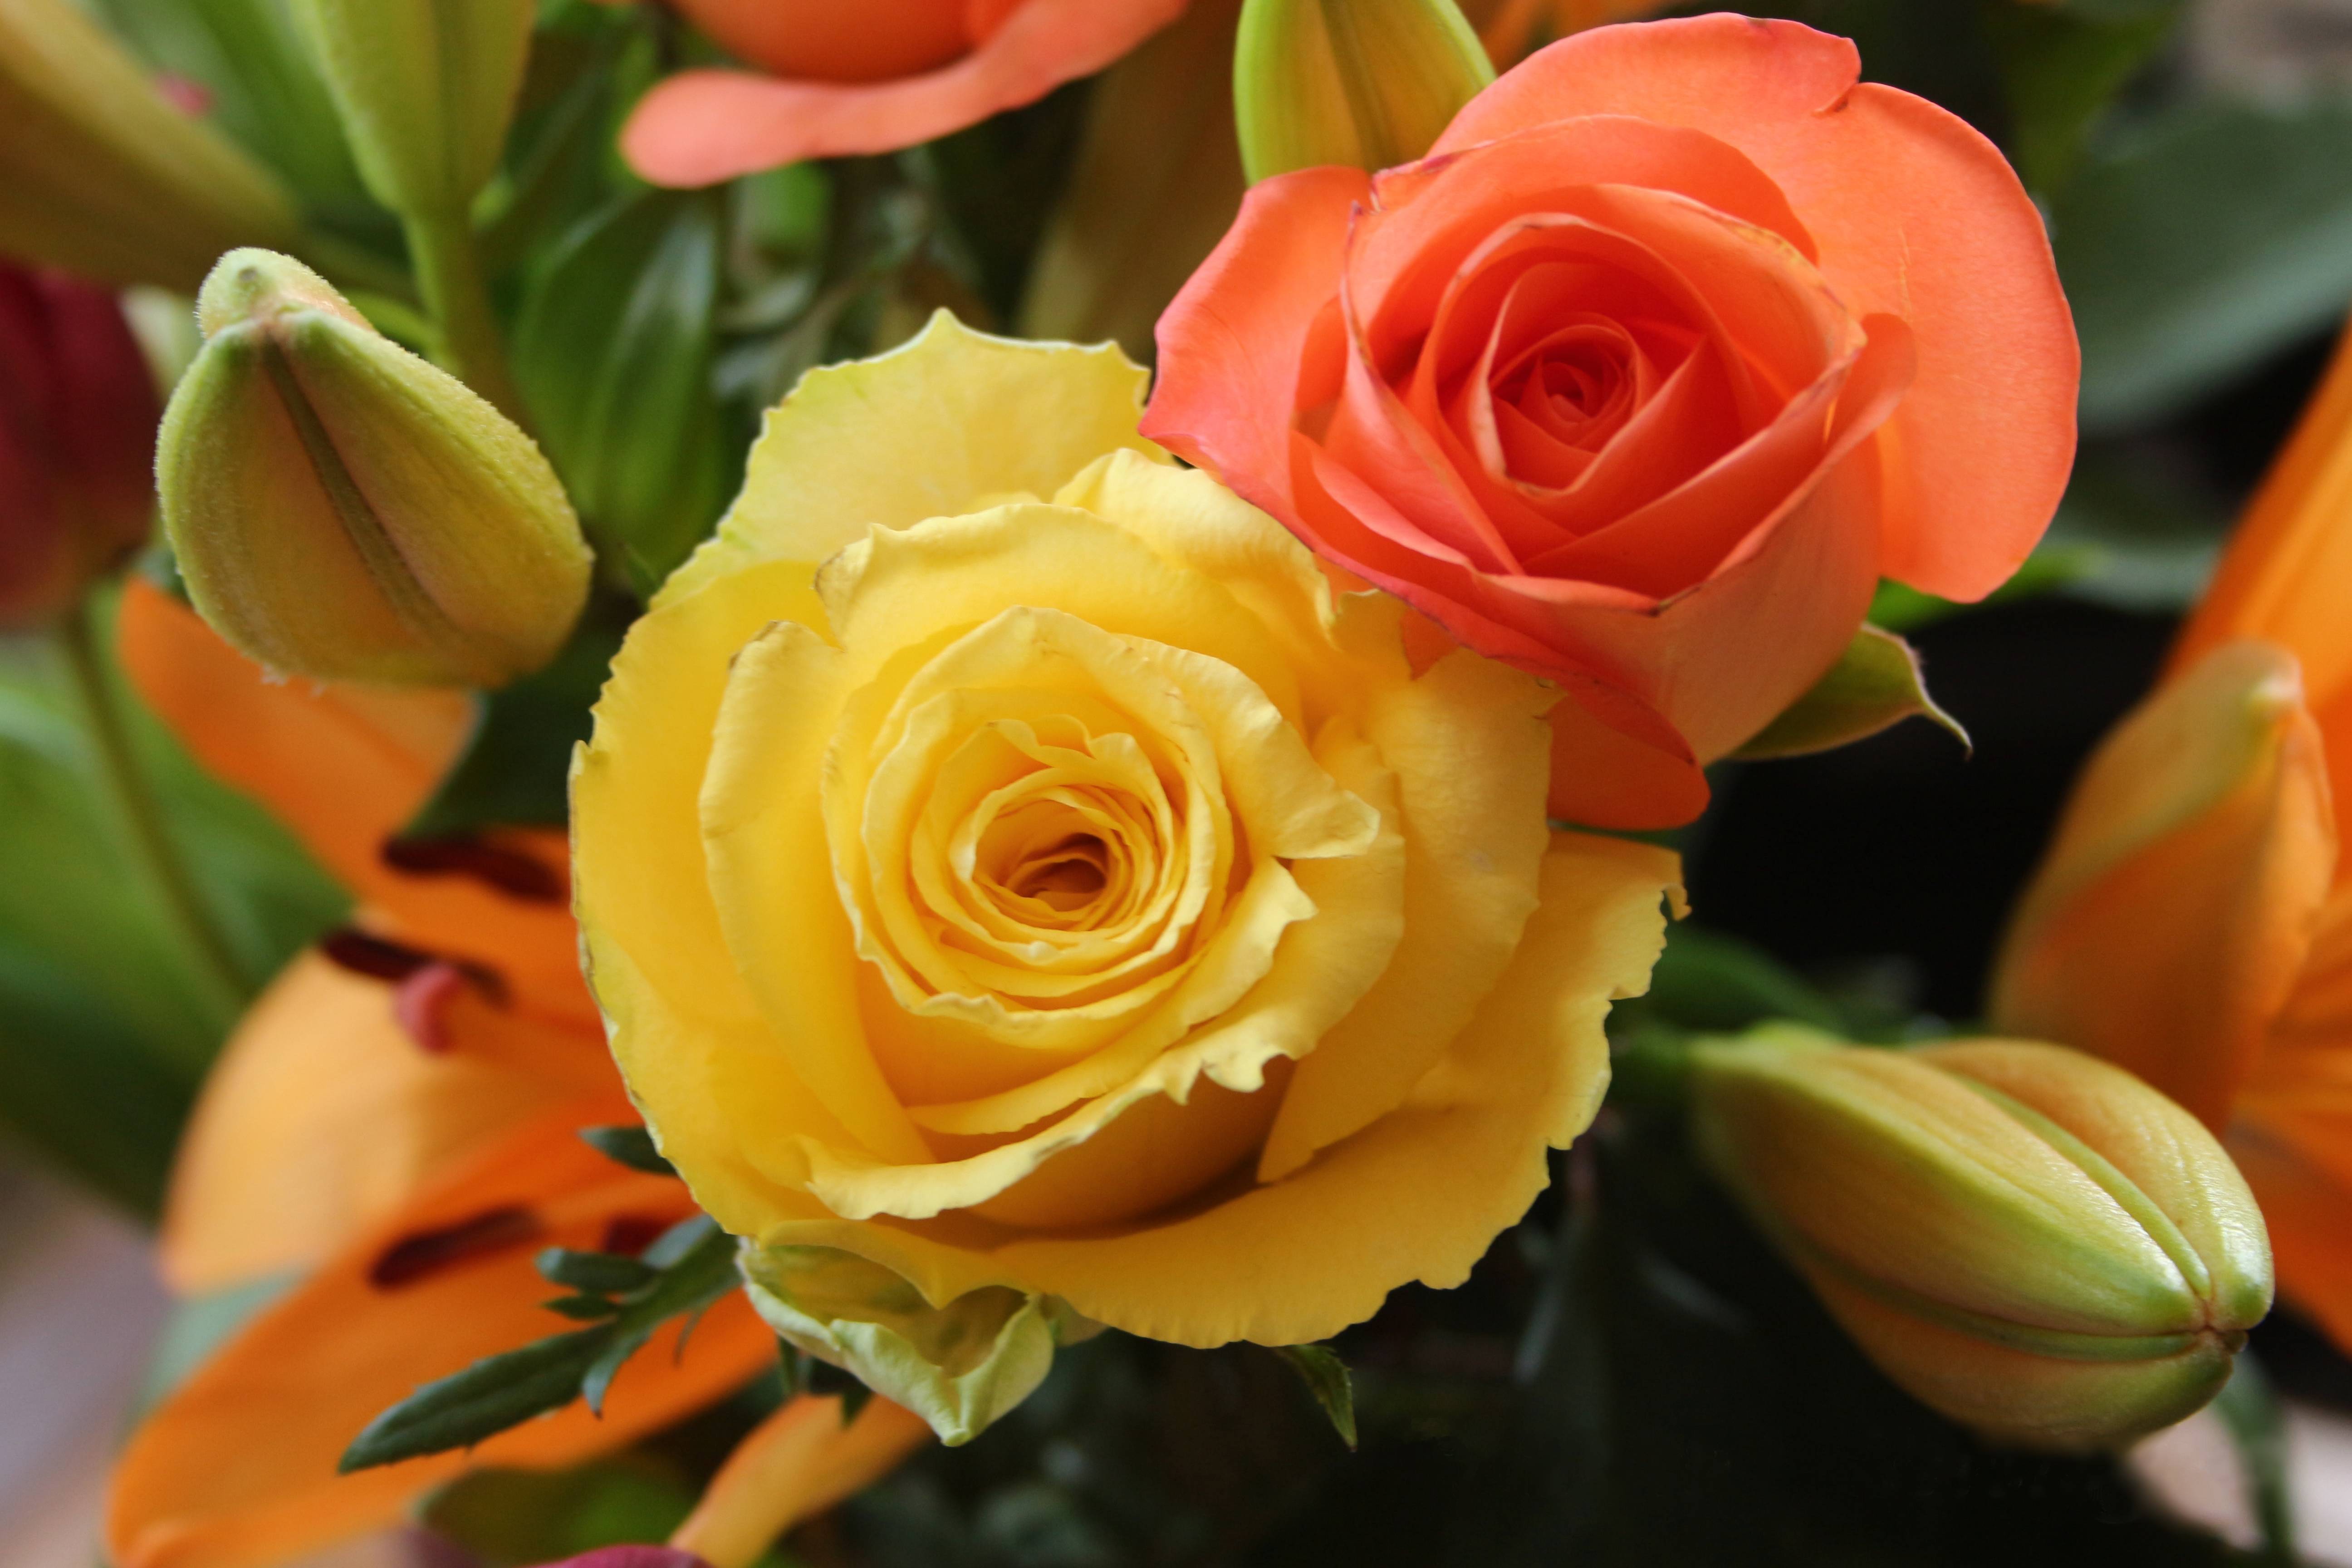 Фото желтые лепестки роза флора - бесплатные картинки на Fonwall